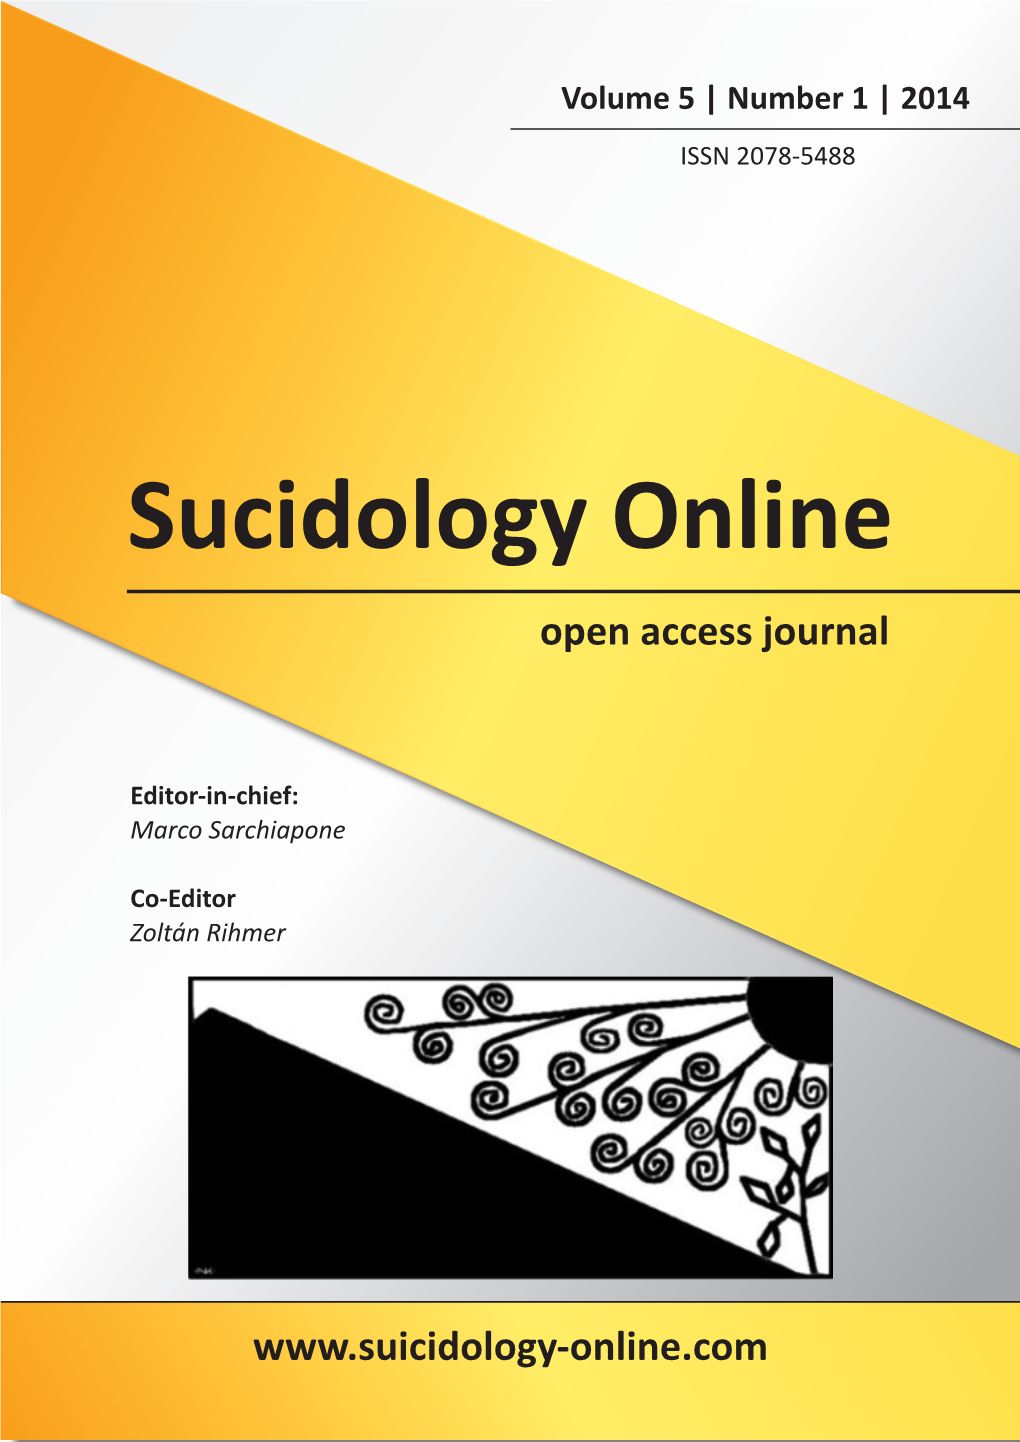 Sucidology Online Open Access Journal